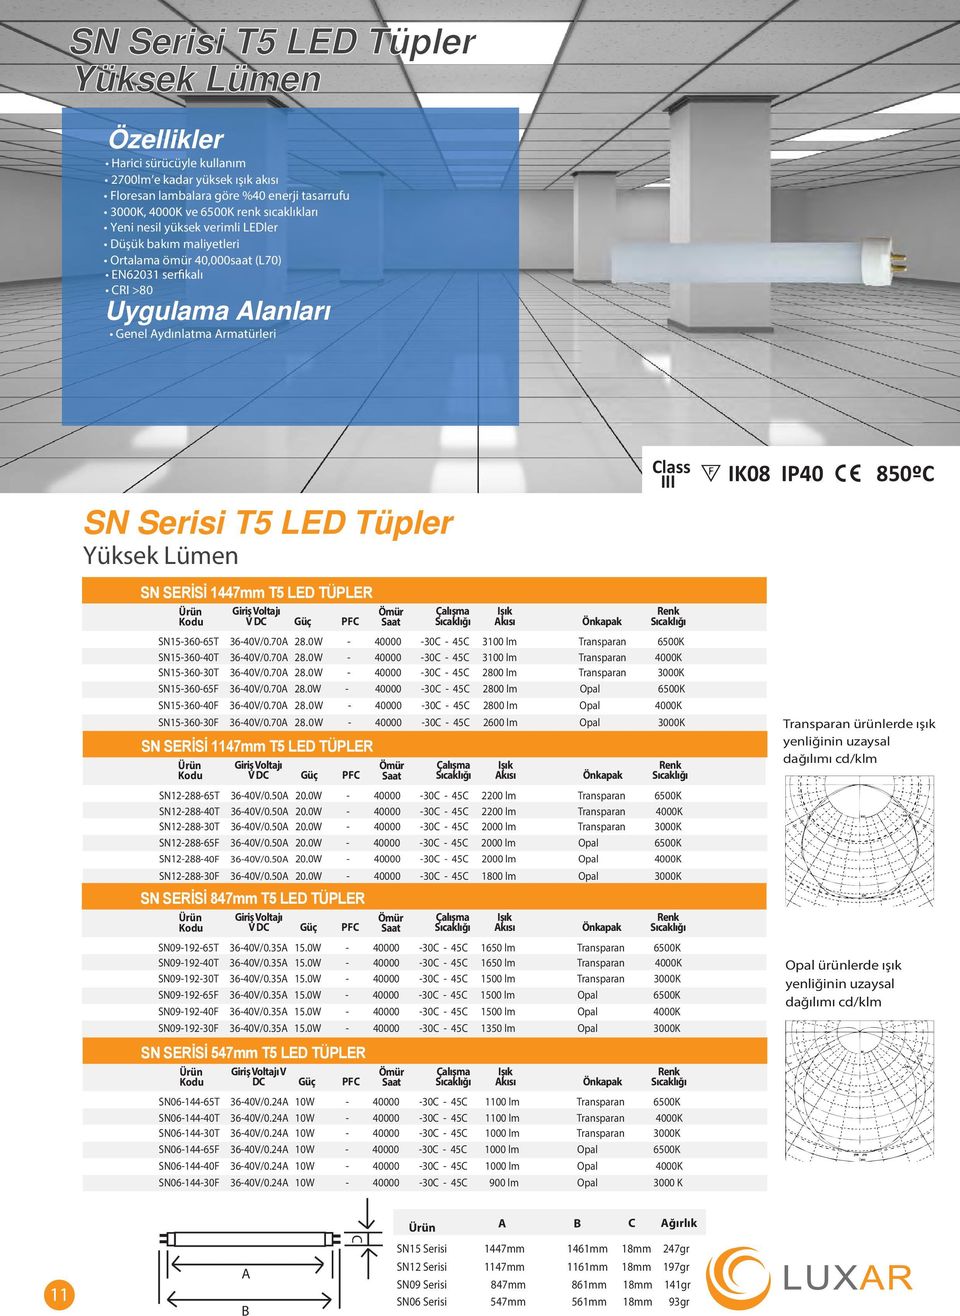 Işık Akısı Önkapak Renk SN15-360-65T 36-40V/0.70A 28.0W - 40000-30C - 45C 3100 lm Transparan 6500K SN15-360-40T 36-40V/0.70A 28.0W - 40000-30C - 45C 3100 lm Transparan 4000K SN15-360-30T 36-40V/0.